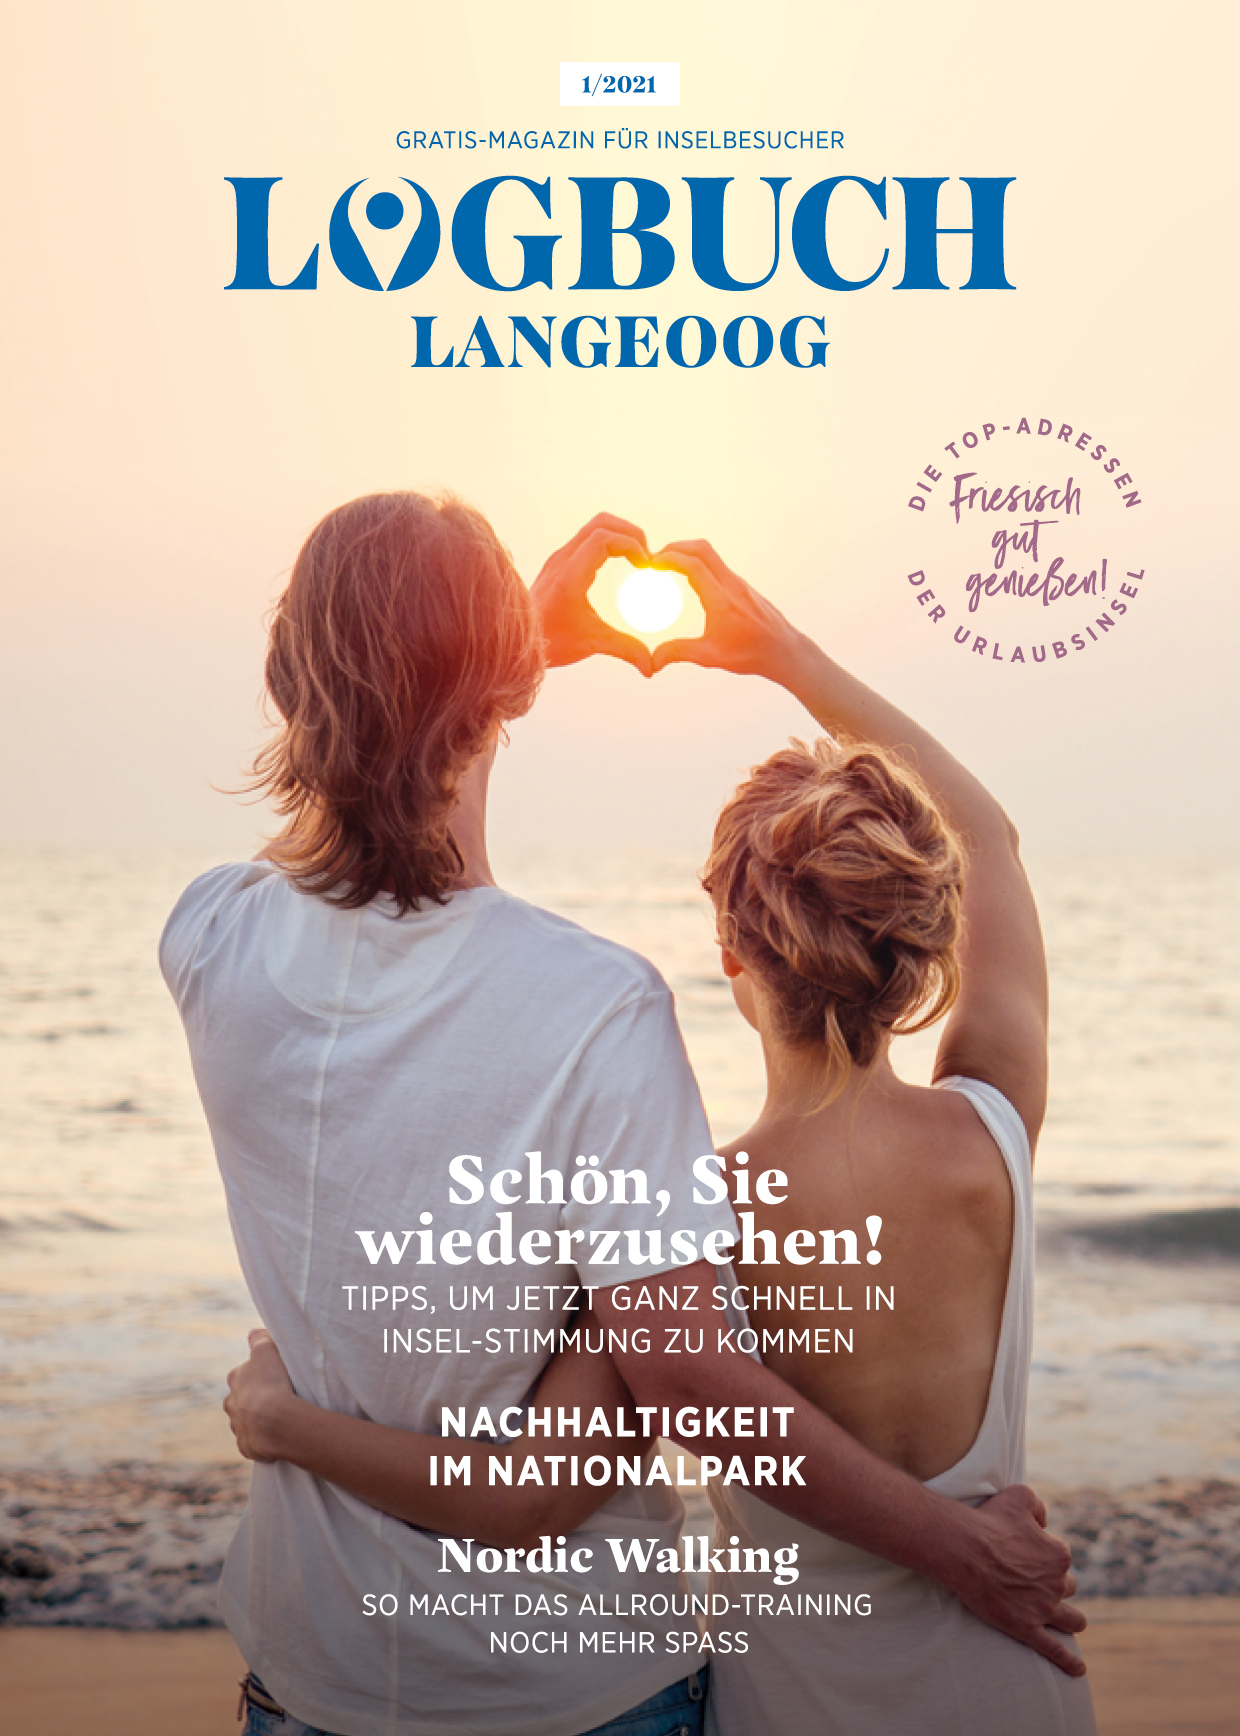 Logbuch Langeoog